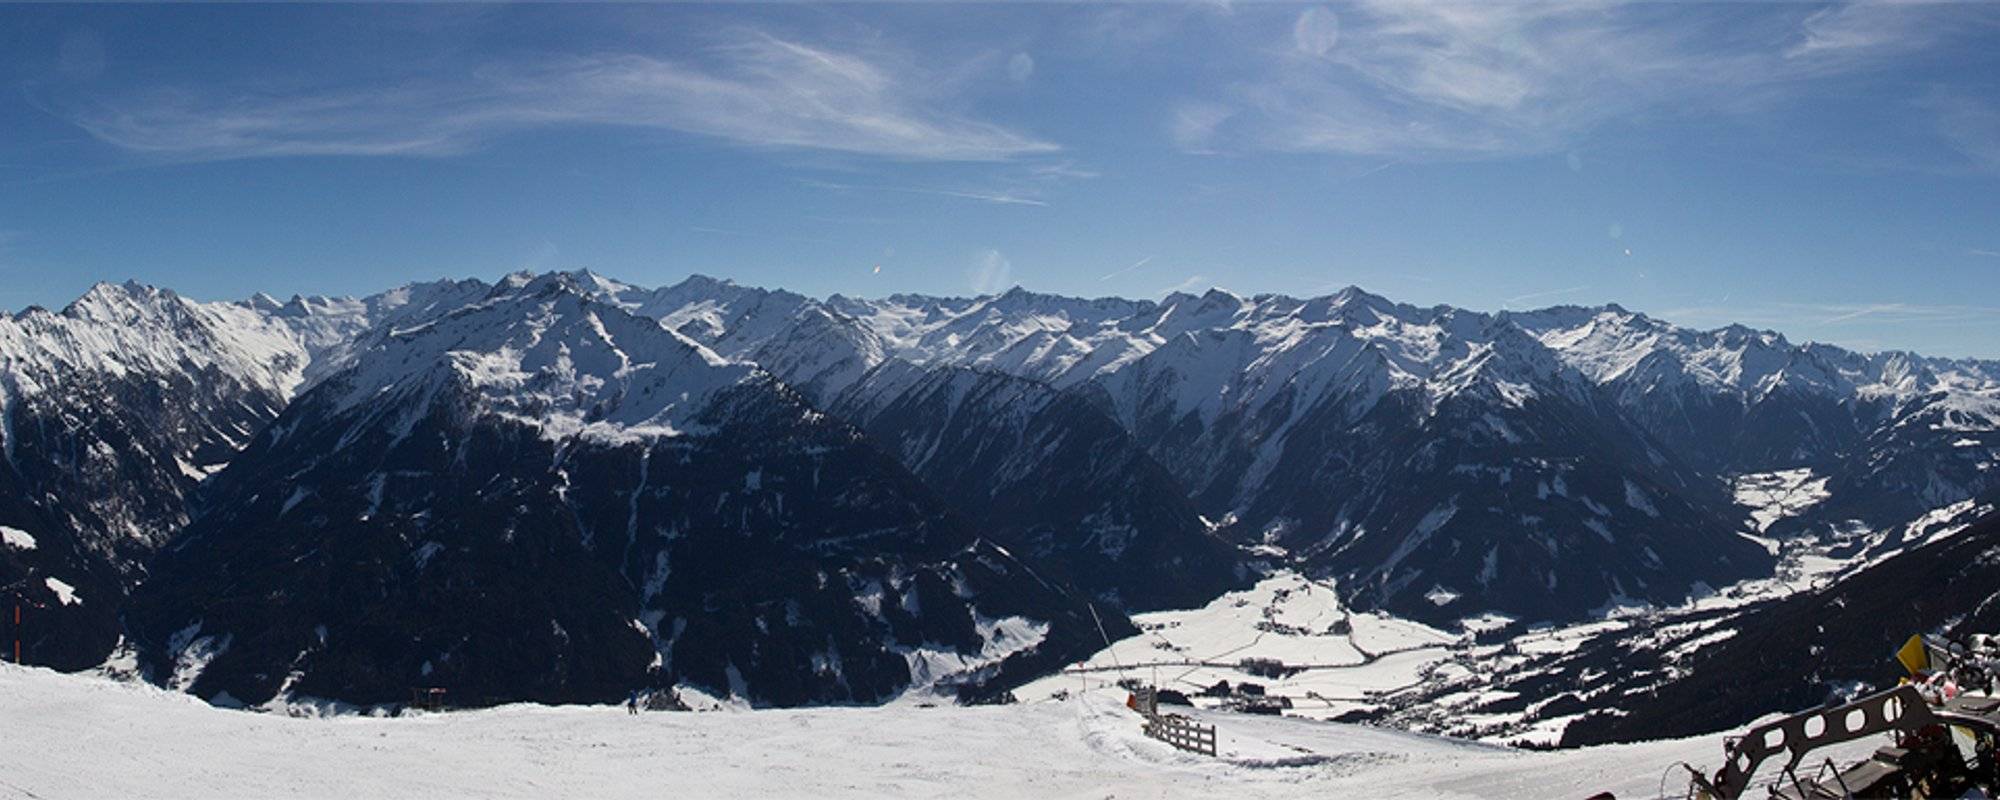 Neukirchen, Austria 2019 First time on skis | Das erste Mal auf Skiern [EN/DE]